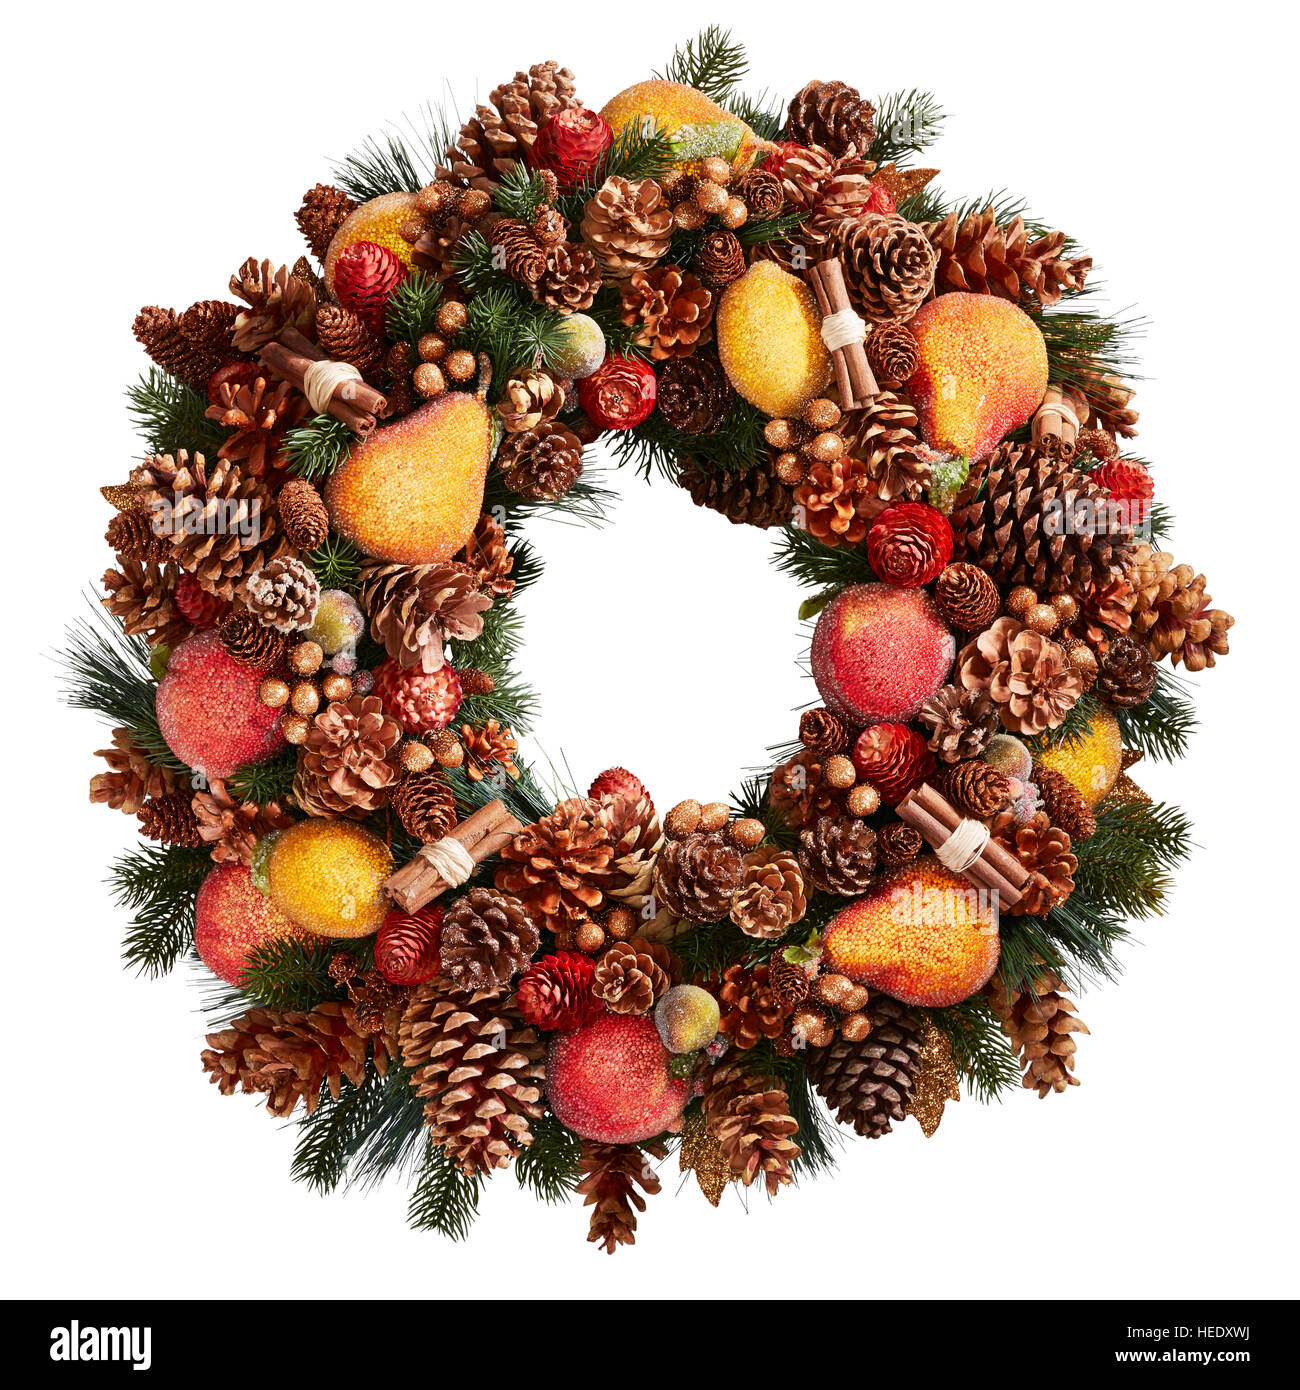 Weihnachtsschmuck mit Kranzgesimse, festliche Tür, stilvoll, traditionell  rund rund rund, traditionell festlich Stockfotografie - Alamy